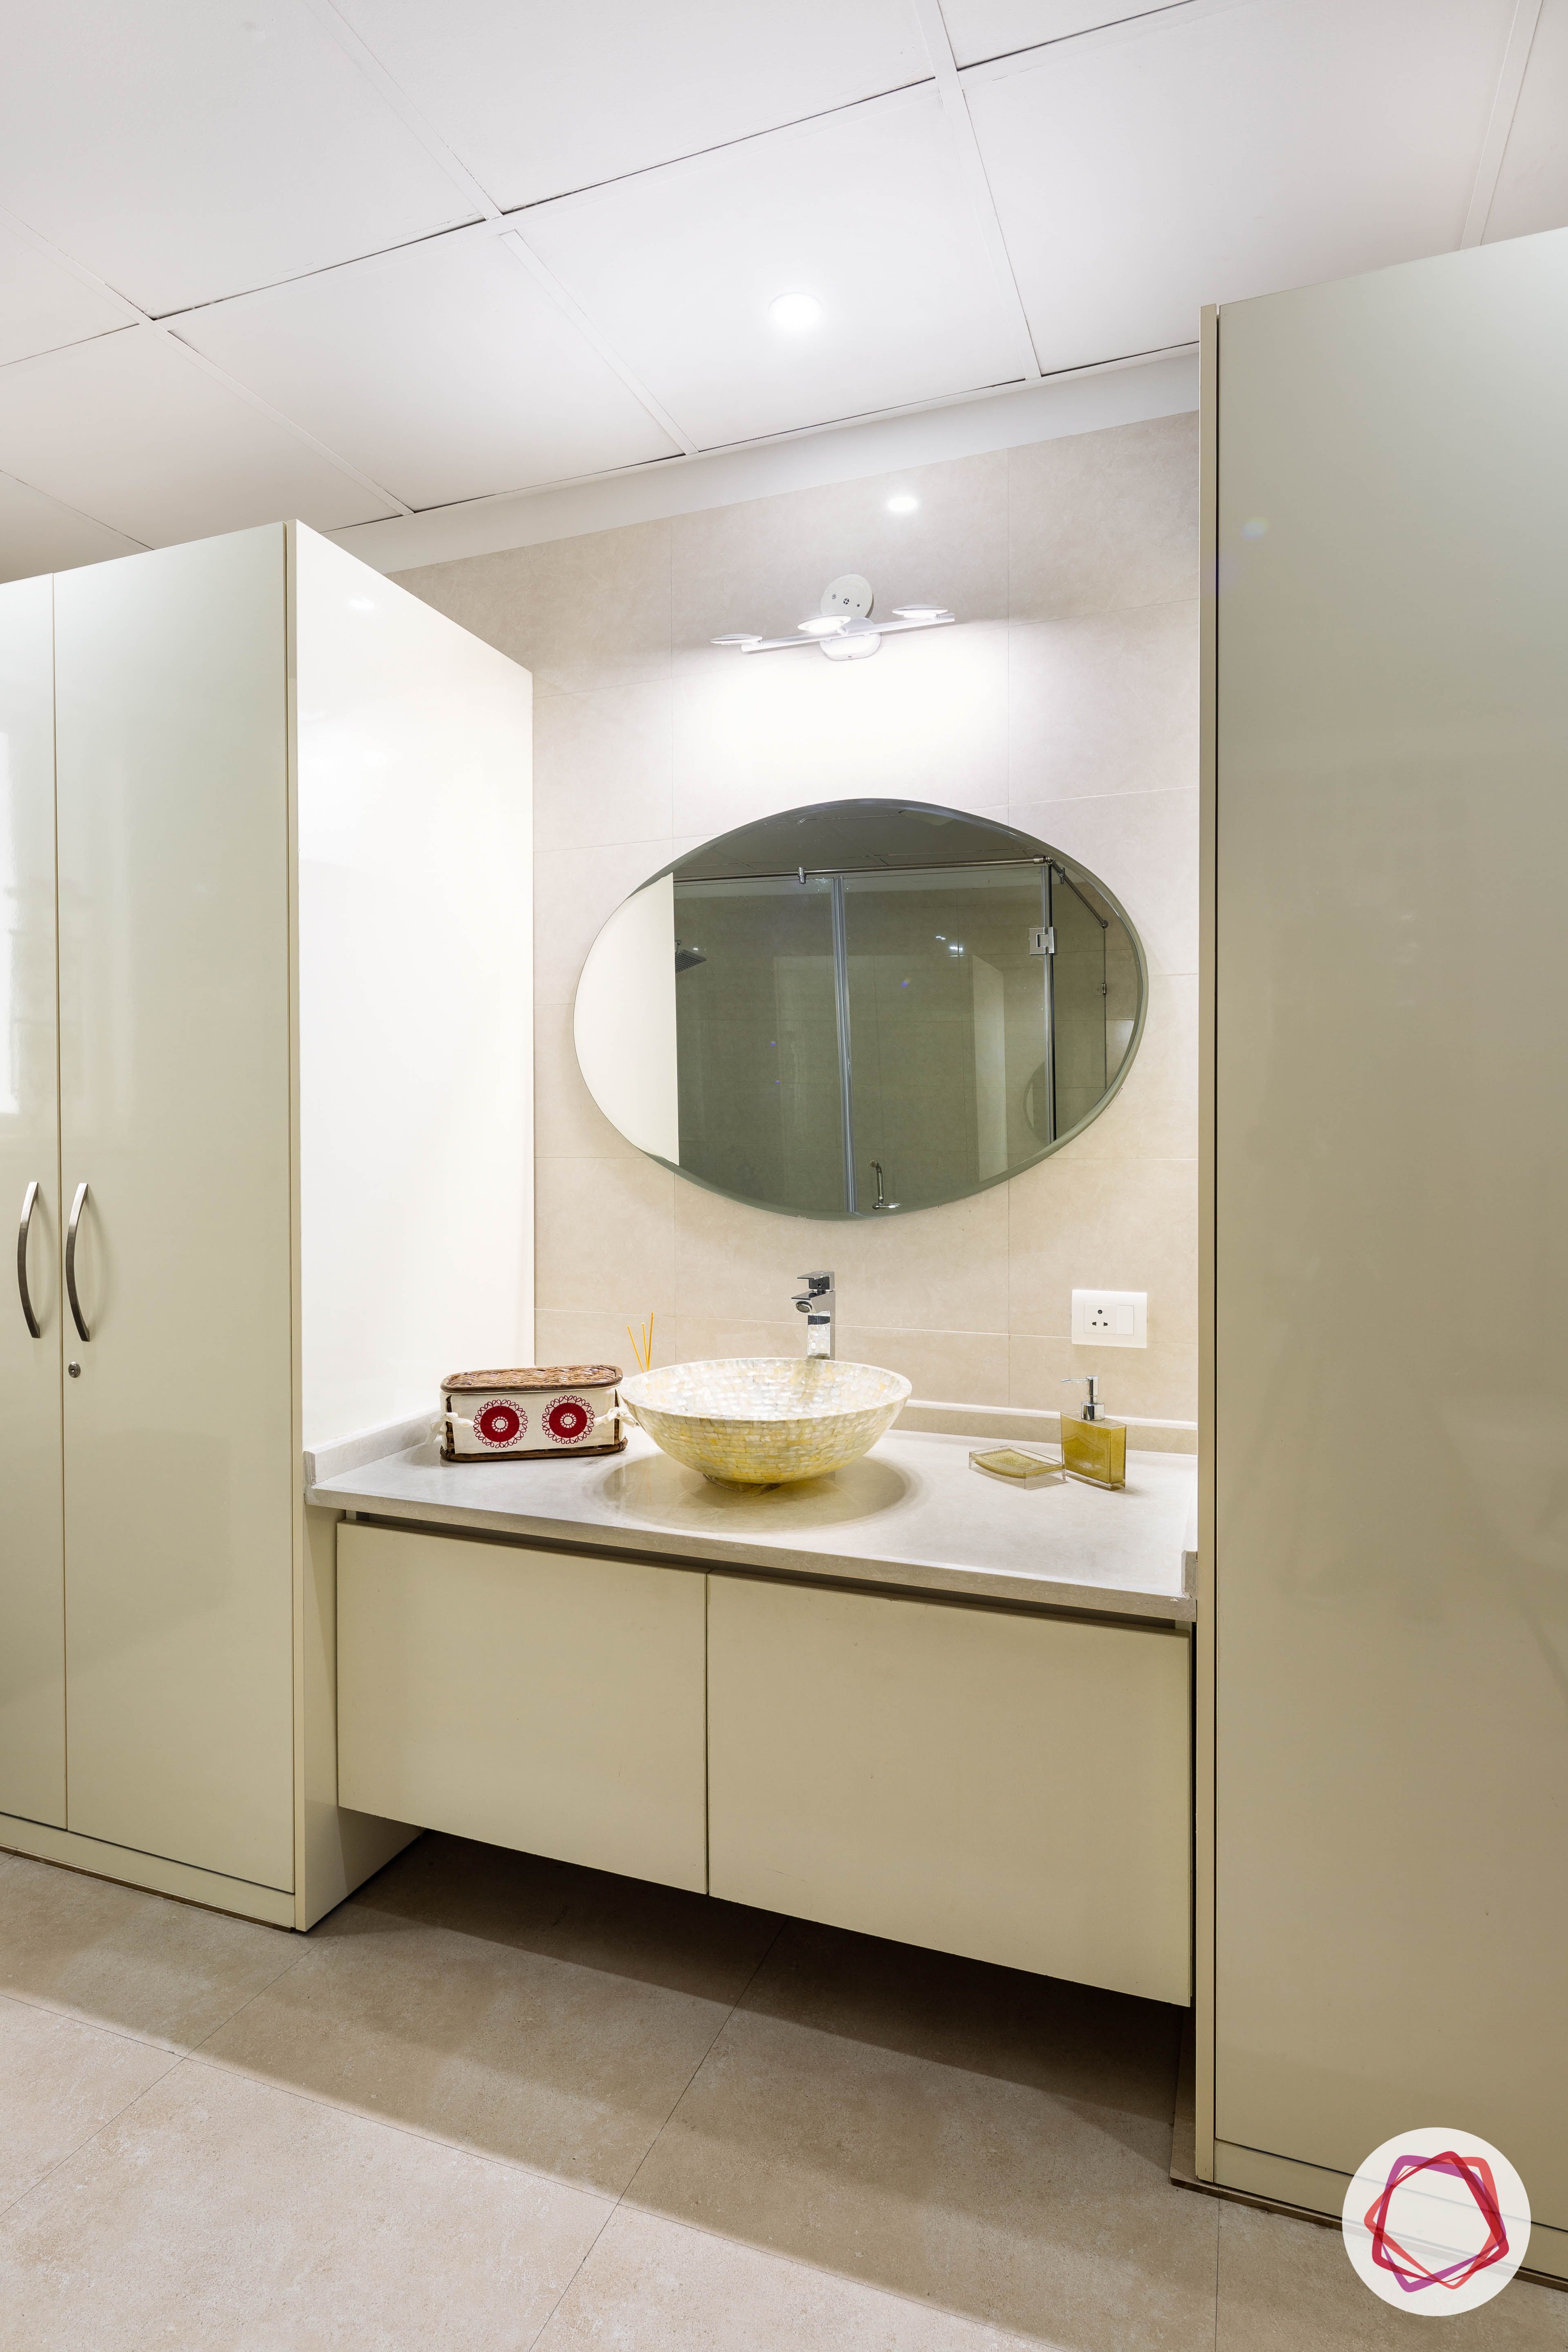 bathroom decor-storage-cabinets-under-vanity-mirror-white-sink